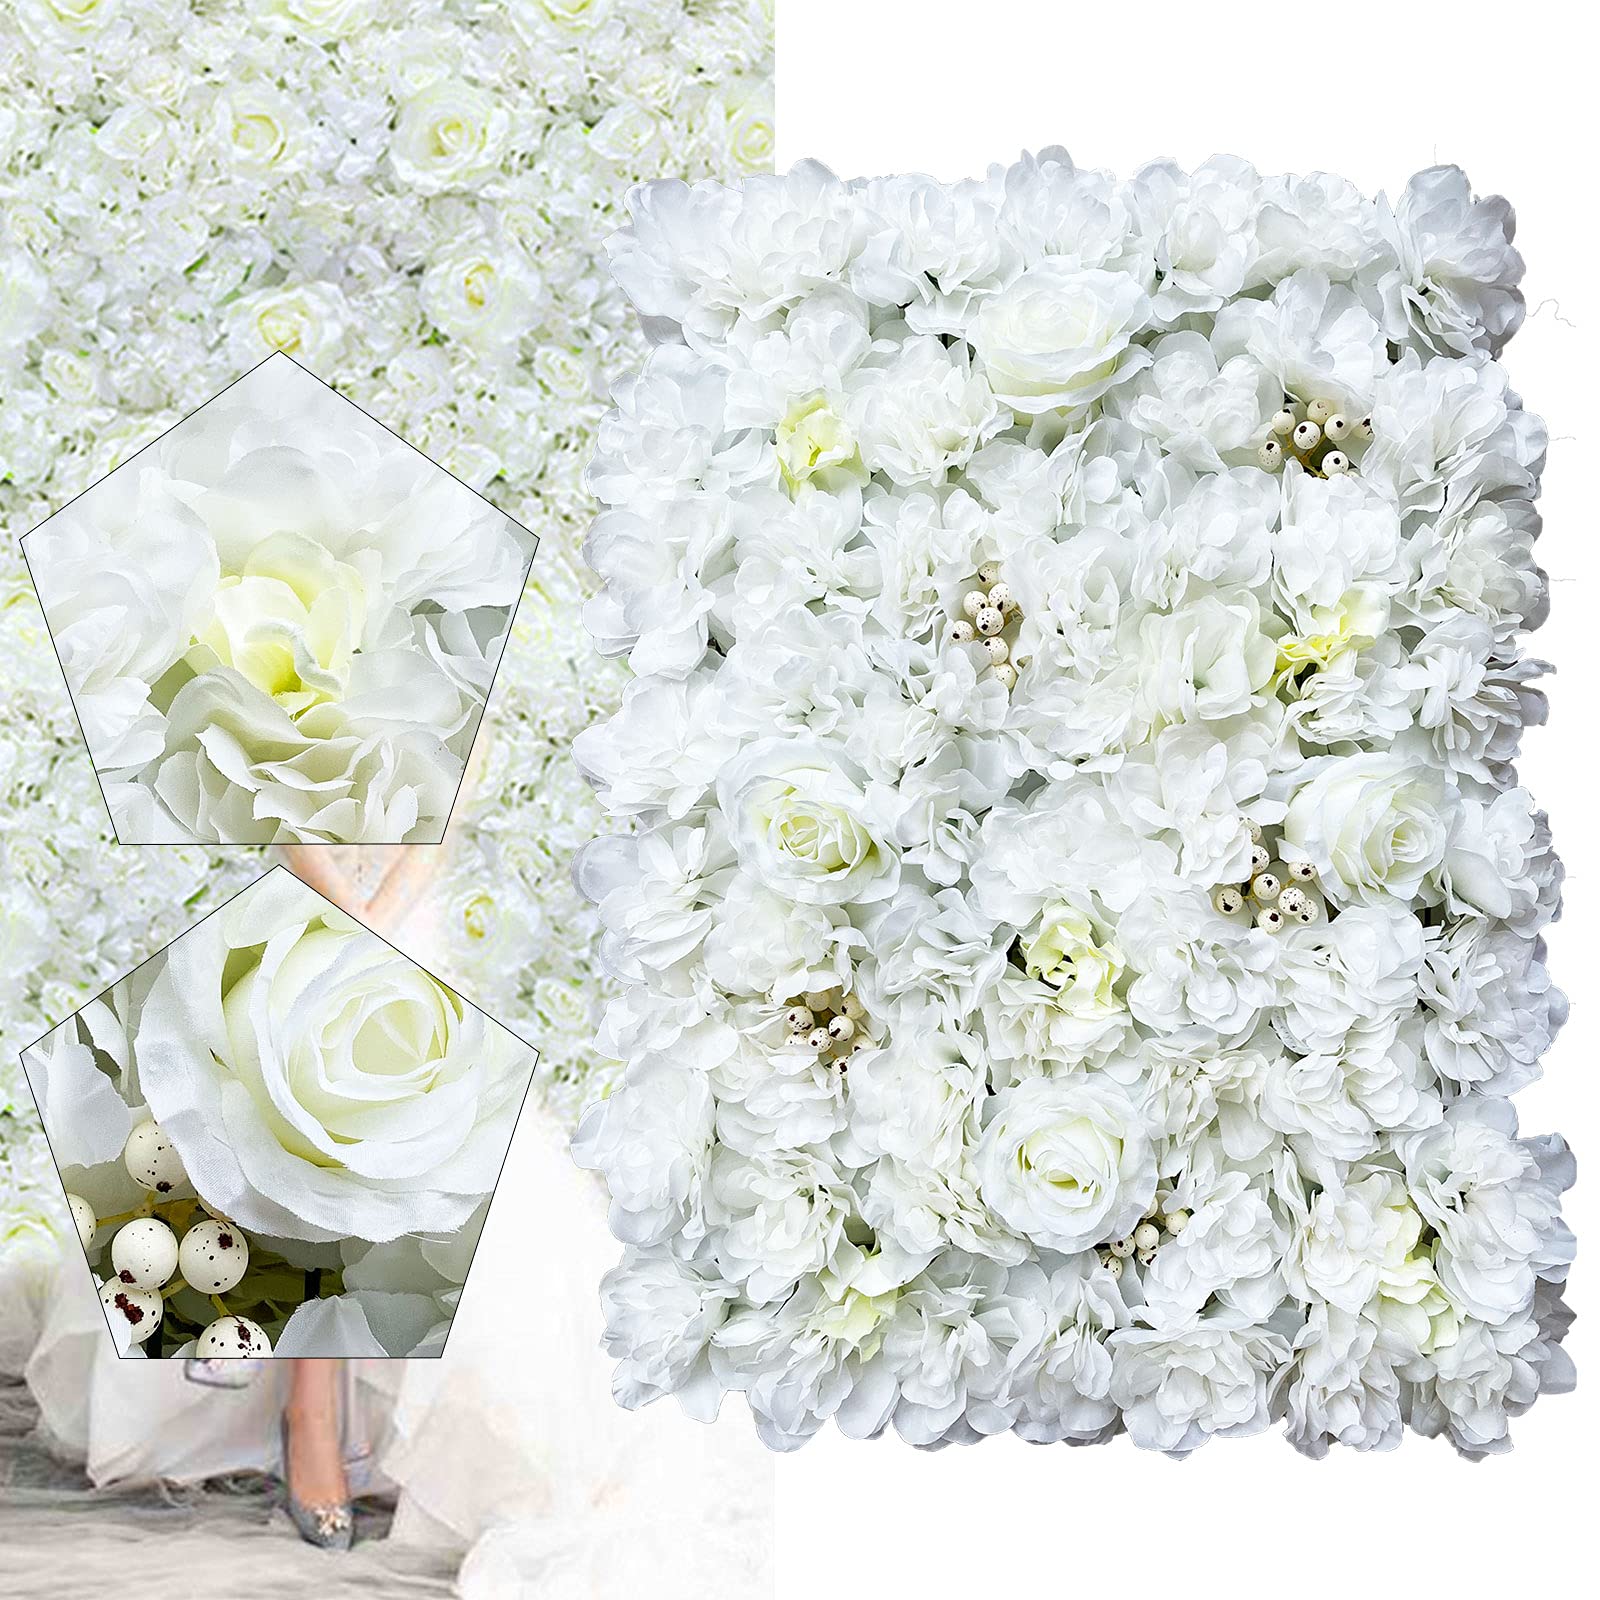  12 pannelli da parete romantici con fiori artificiali, 60 x 40 cm